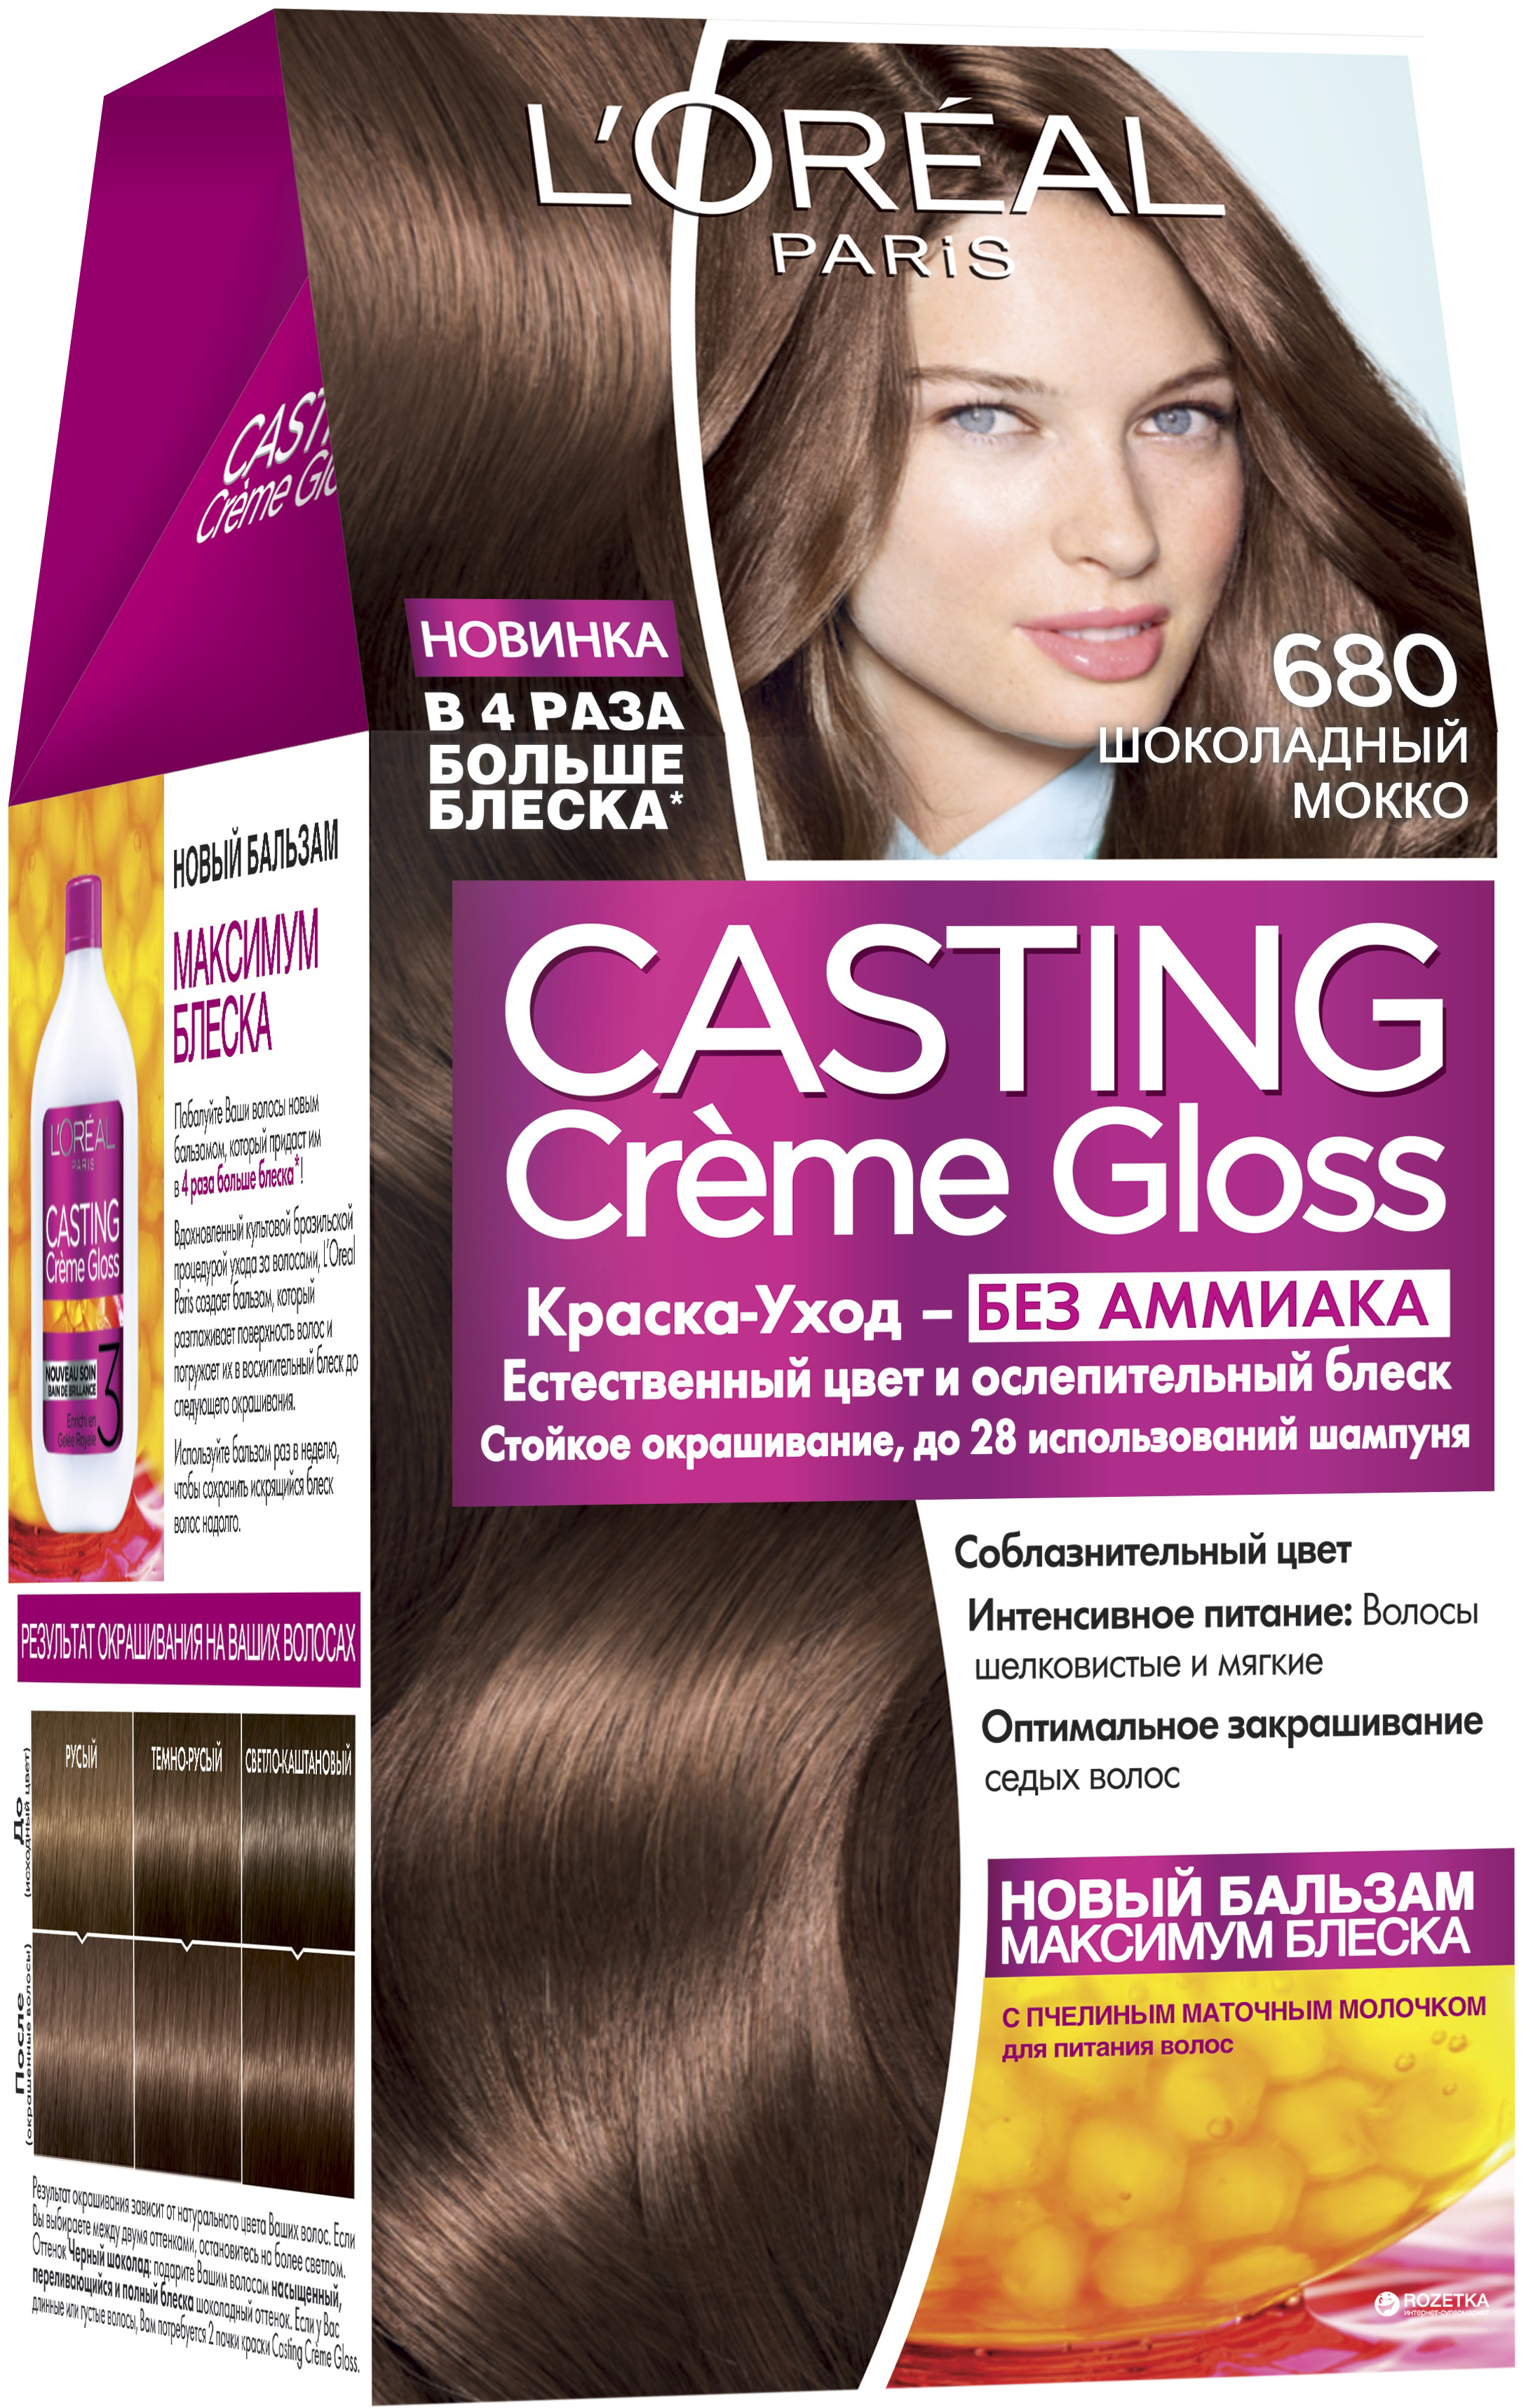 L'Oreal Paris краска для волос, casting Creme Gloss, 680 - шоколадный мокко